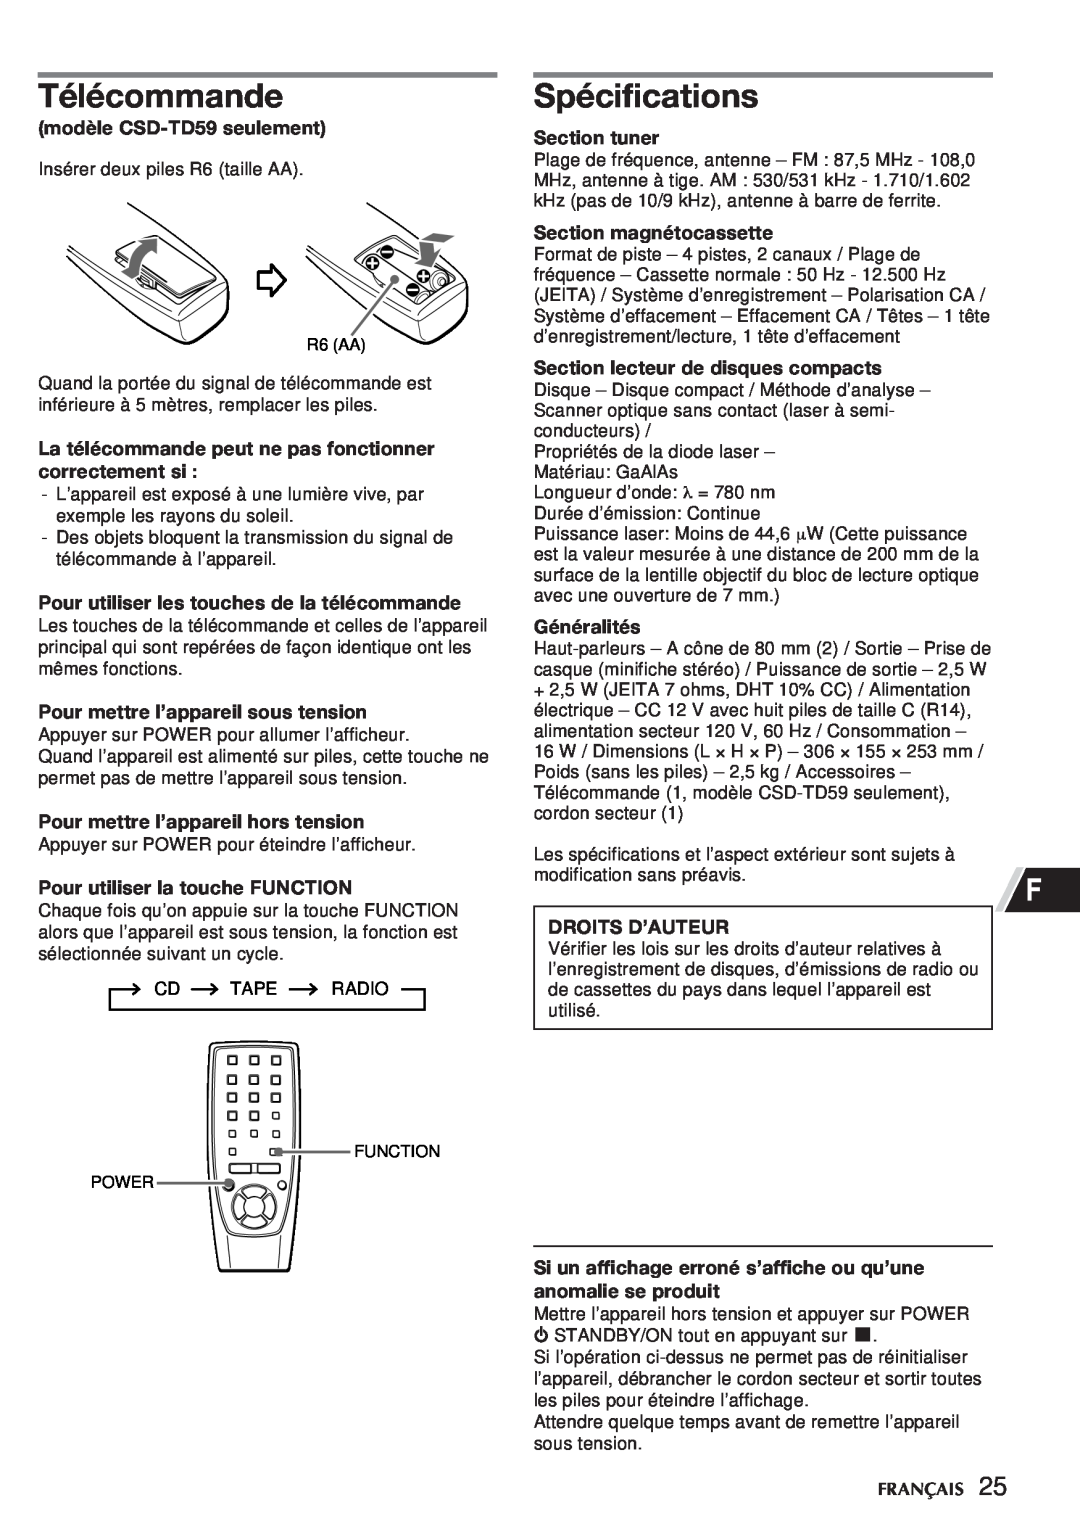 Aiwa CSD-TD55 manual Télécommande, Spécifications, modèle CSD-TD59 seulement, Pour utiliser les touches de la télécommande 